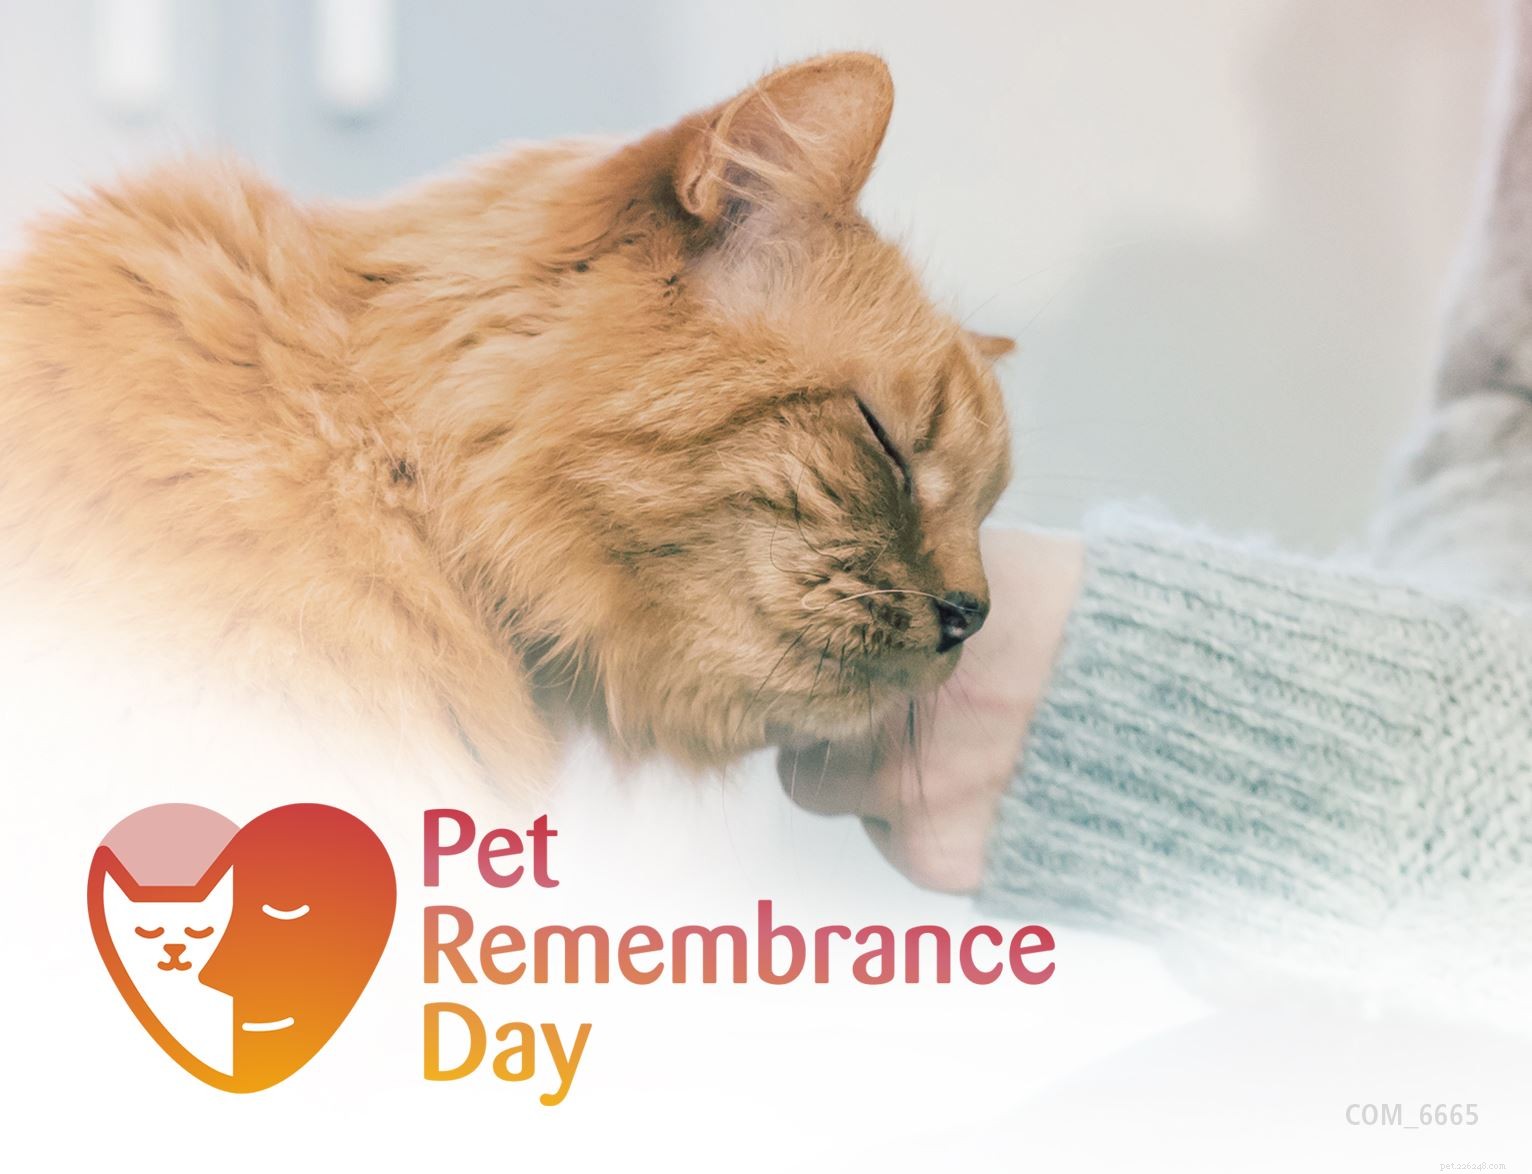 Ontdek speciale herdenkingsideeën om de nagedachtenis van uw geliefde kat te eren op deze Pet Remembrance Day